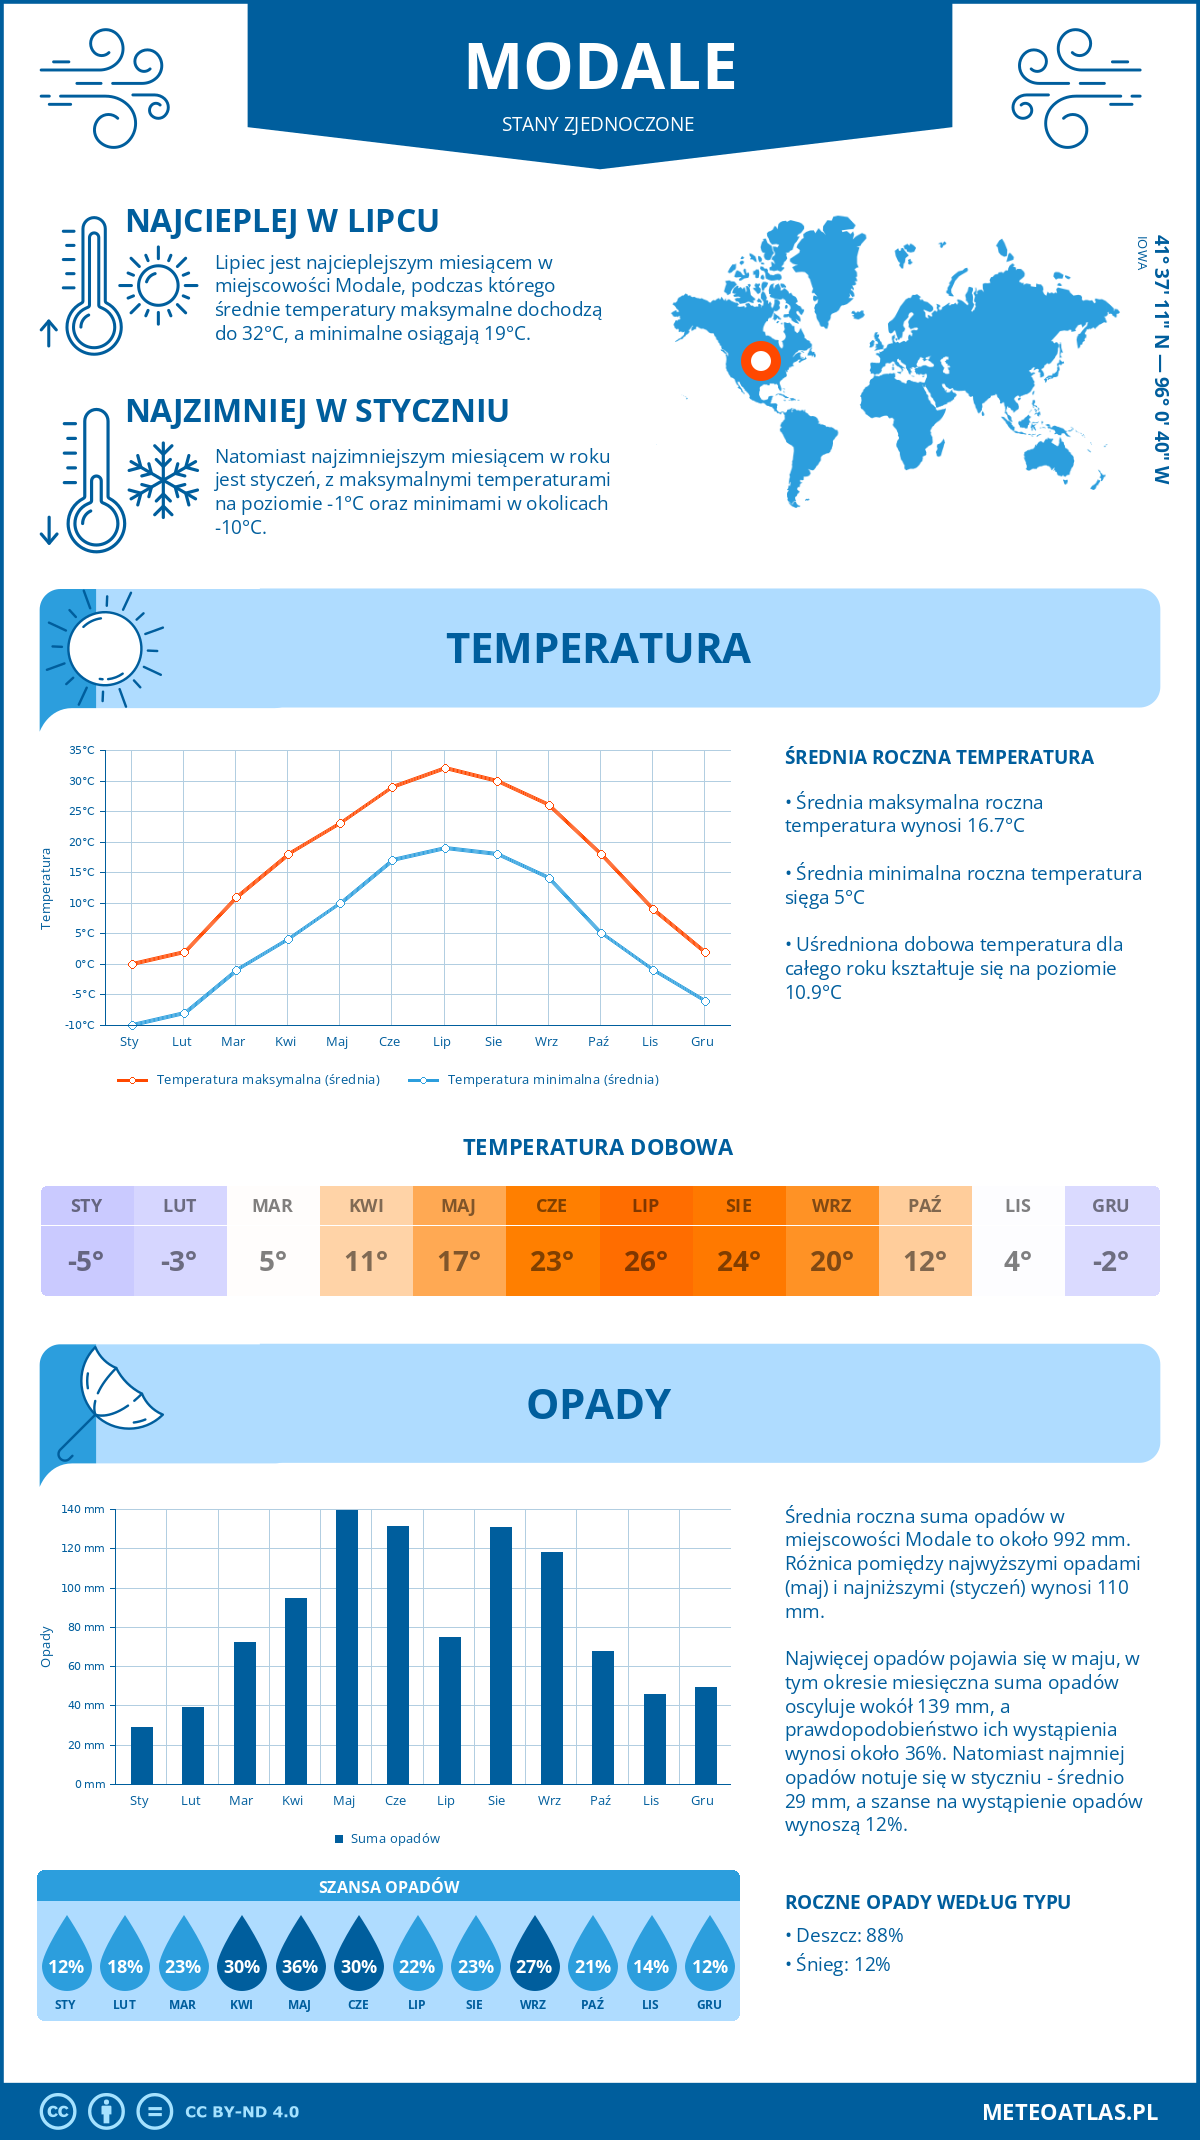 Pogoda Modale (Stany Zjednoczone). Temperatura oraz opady.